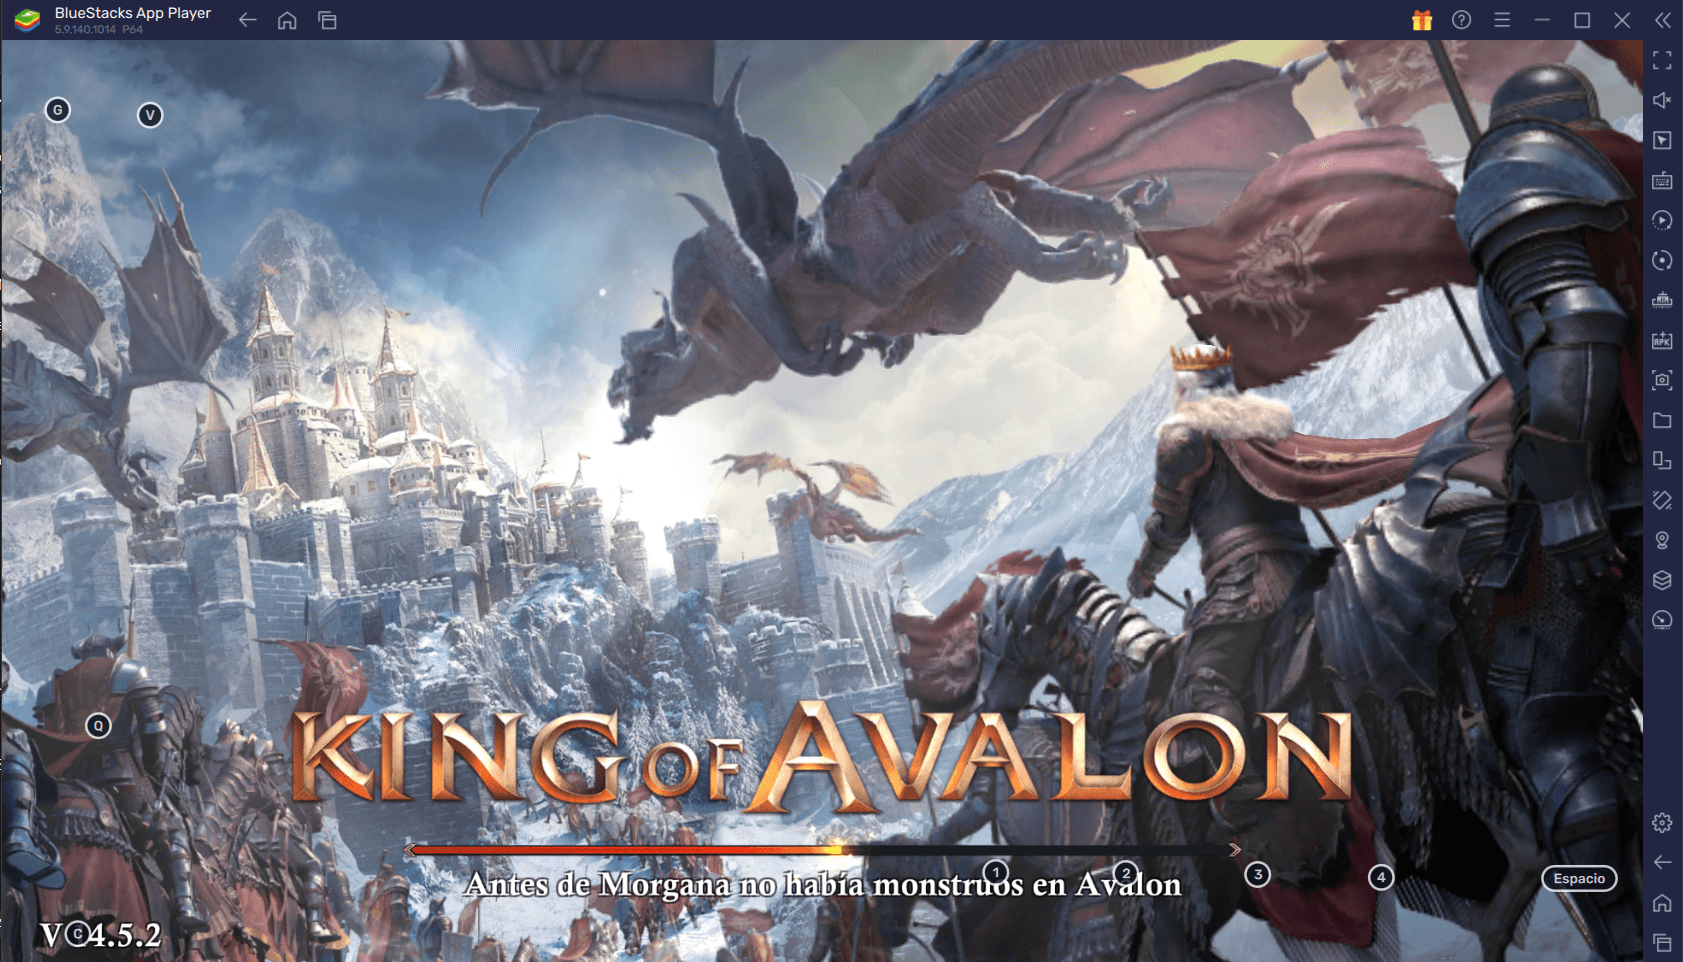 King of Avalon en PC cómo usar nuestras herramientas BlueStacks para construir el imperio más fuerte con facilidad